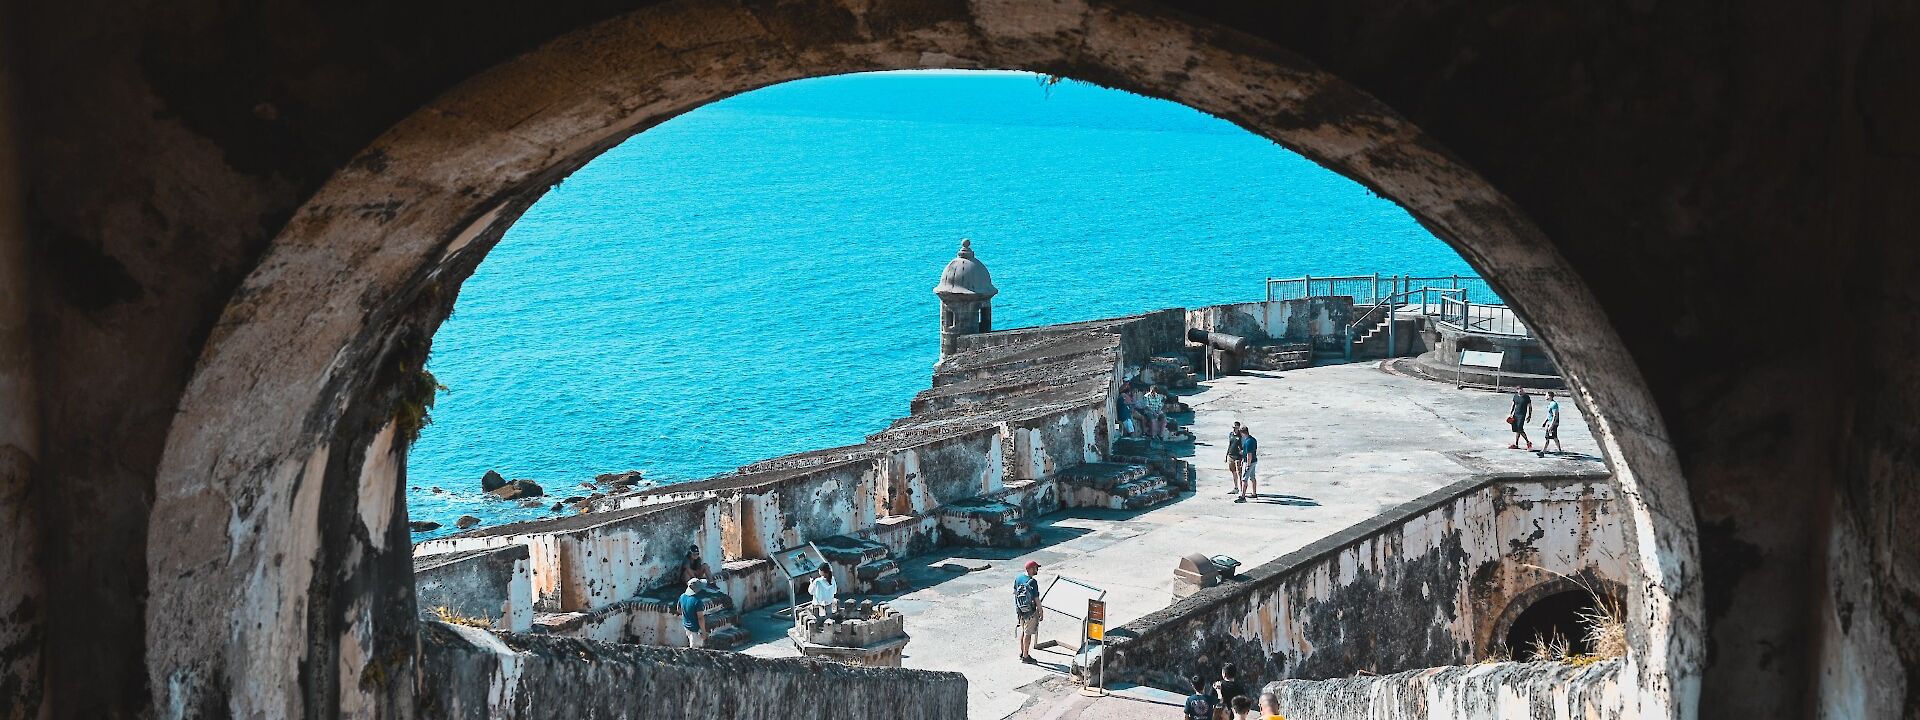 Castillo San Felipe Del Morro, Old San Juan, Puerto Rico. Zixi Zhou@Unsplash